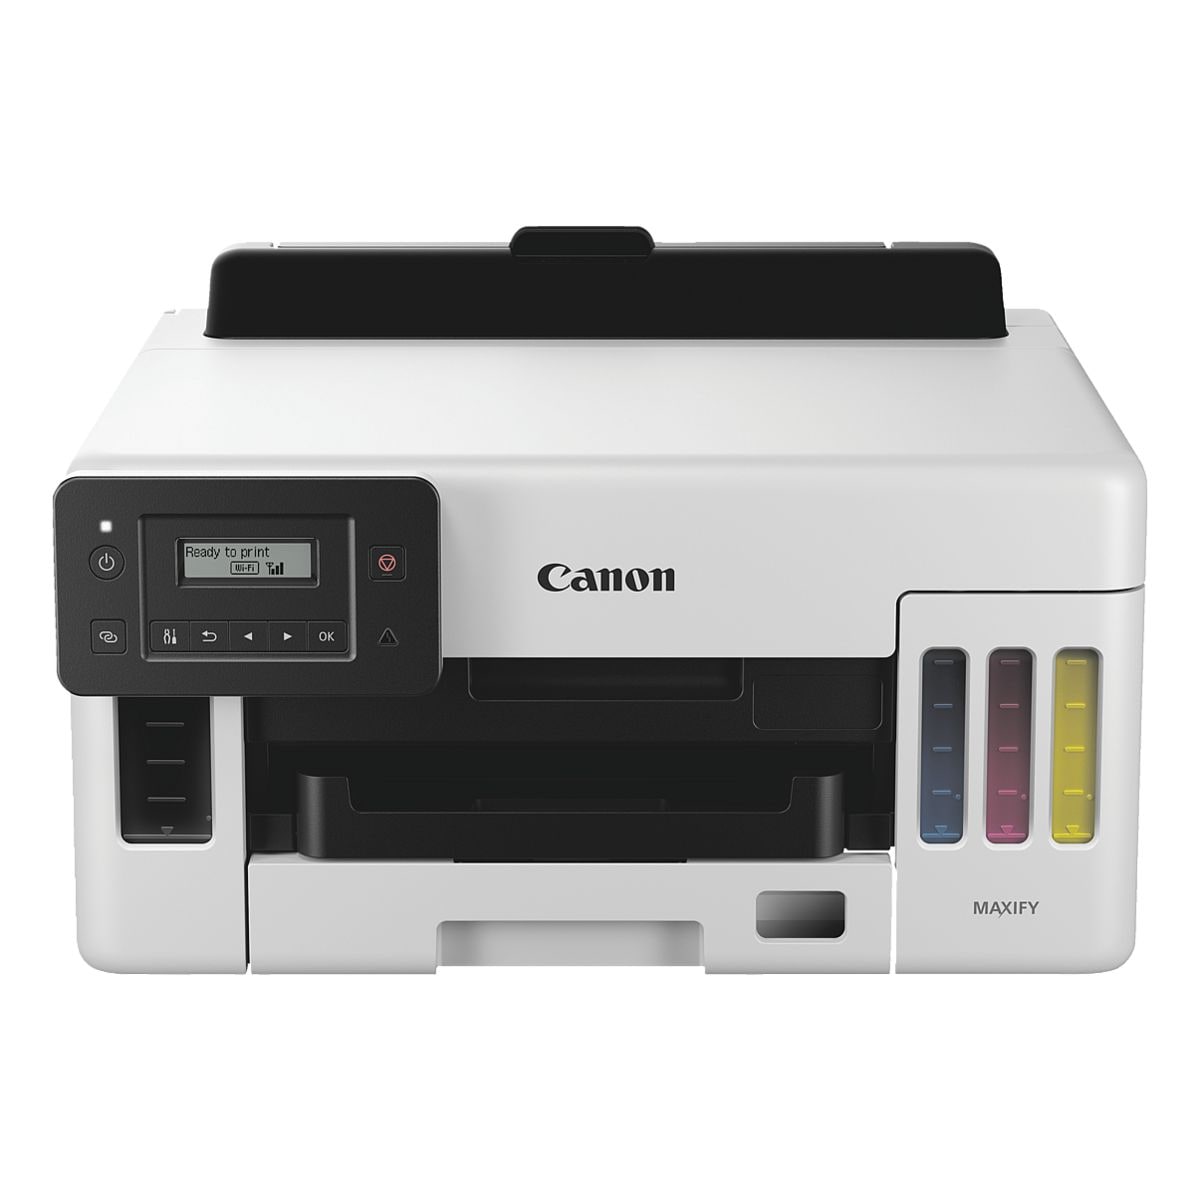 Canon MAXIFY GX5050 Tintenstrahldrucker, A4 Farb-Tintenstrahldrucker, 1200 x 600 dpi, mit WLAN und LAN